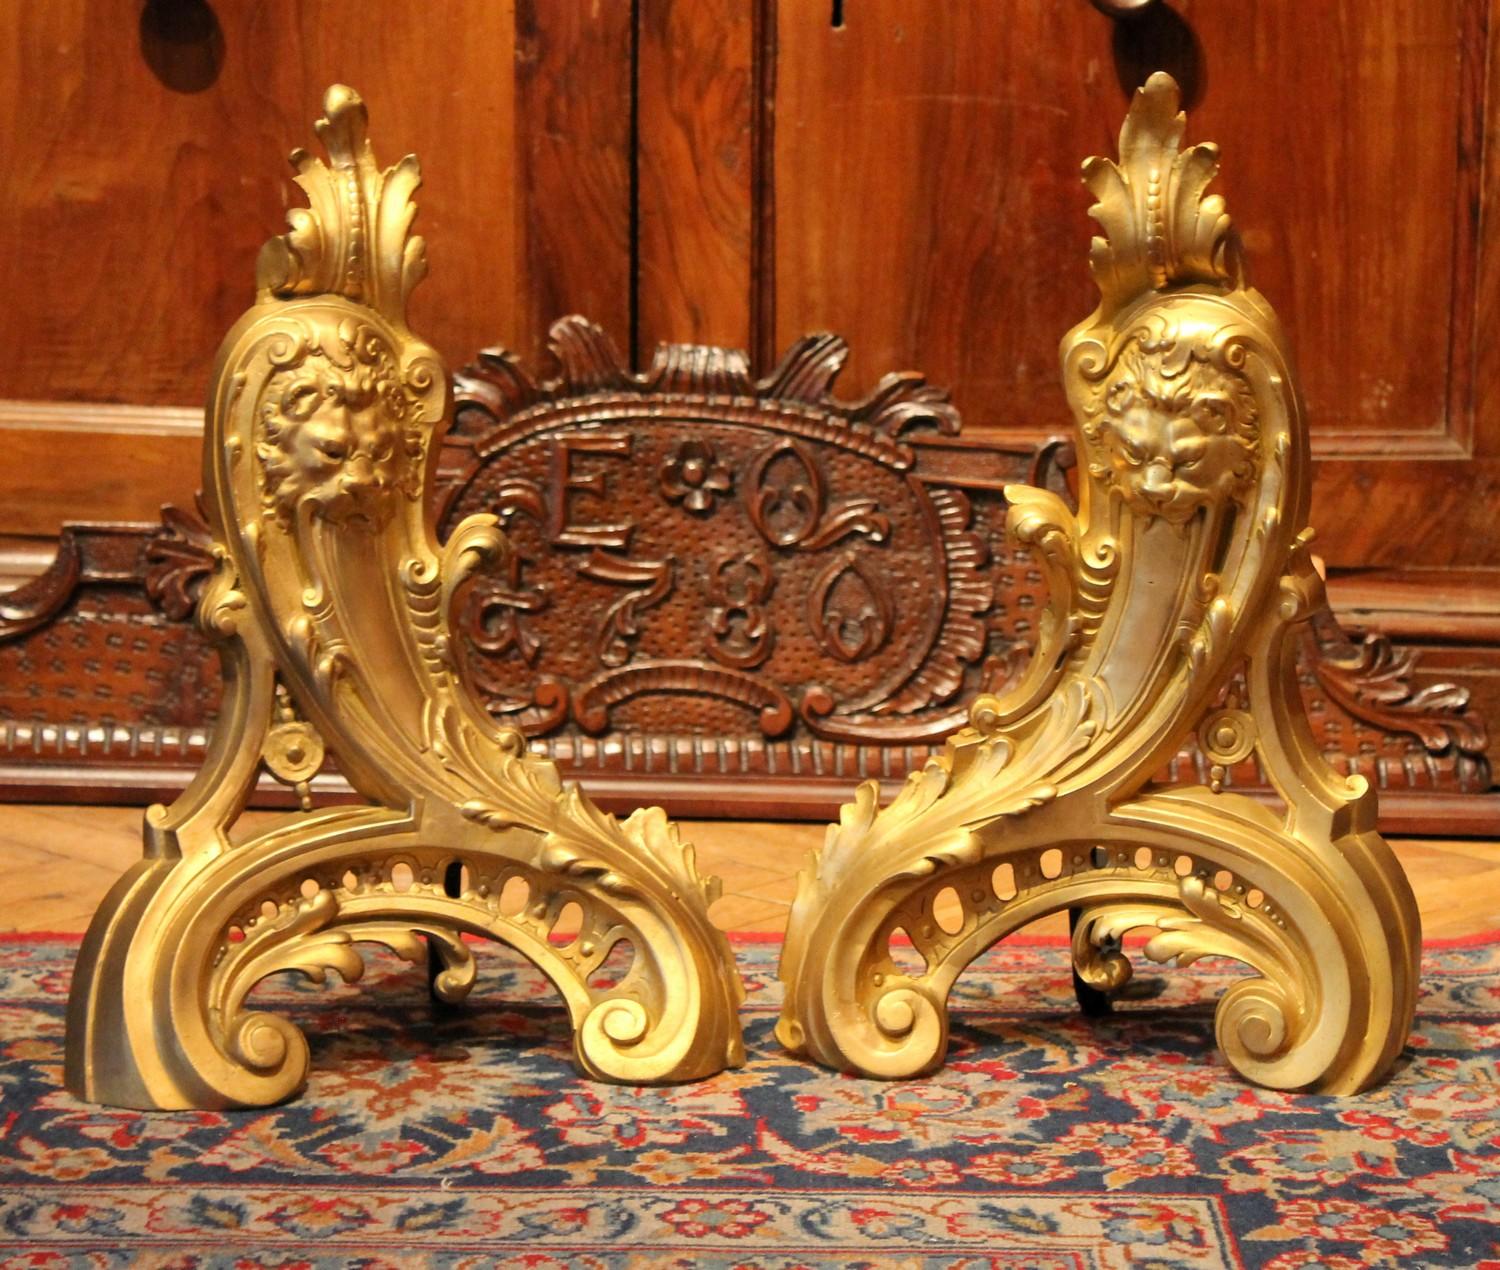 Impressionnante paire de chenets français de style Louis XV en bronze doré finement ciselé. Ces chenets en bronze ciselé et doré sont extrêmement décoratifs, chacun représentant une tête de lion en relief entourée de riches décorations rococo telles